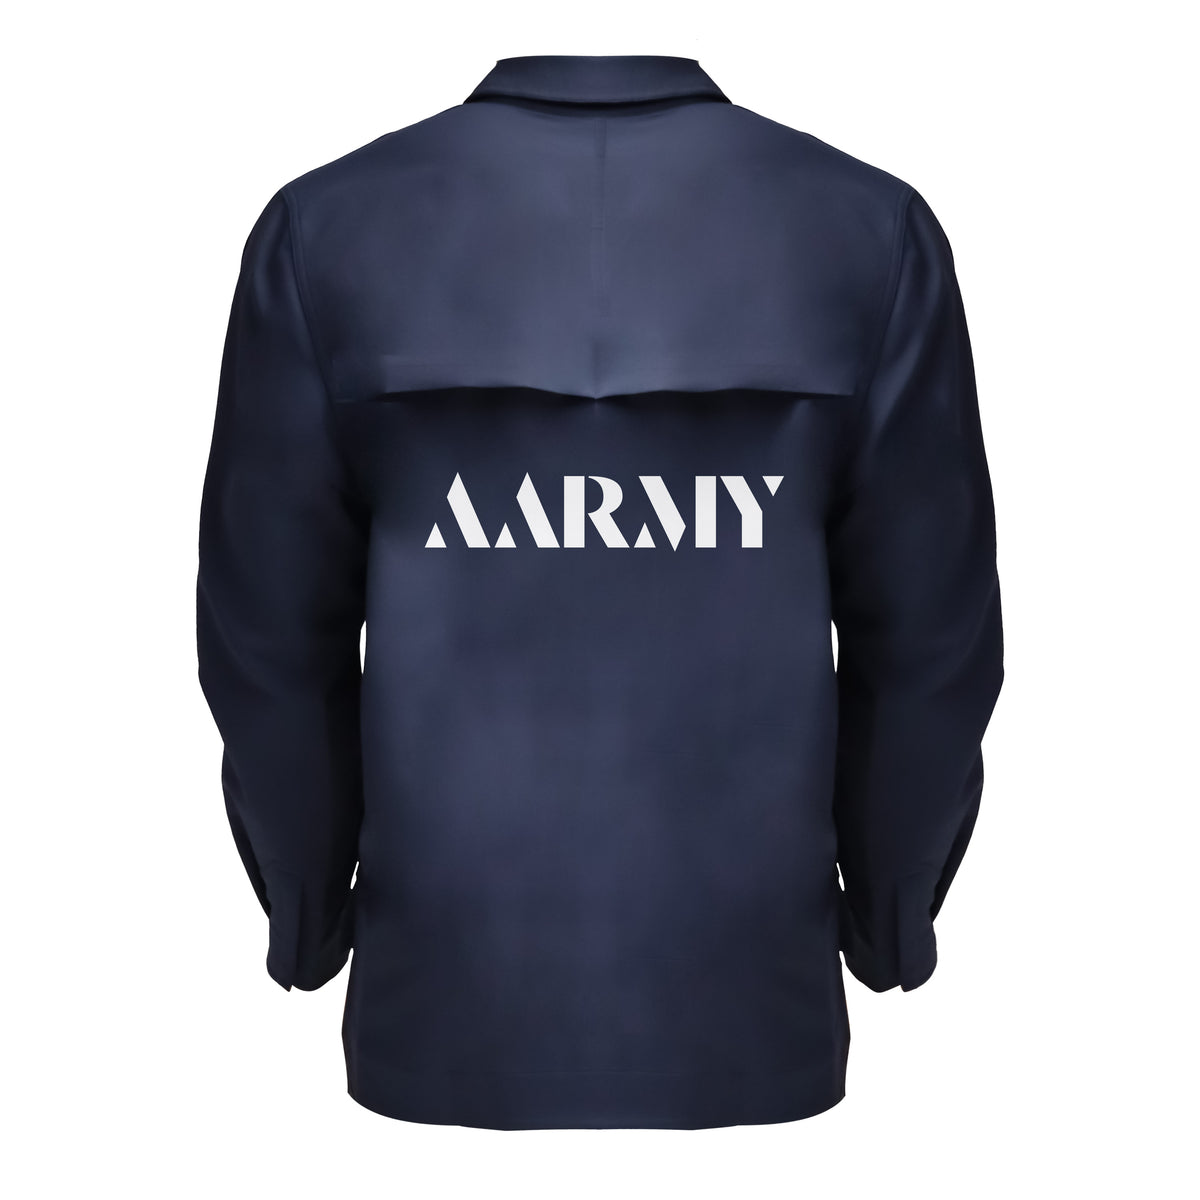 AARMY // lululemon Cargo Pocket Shirt Jacket